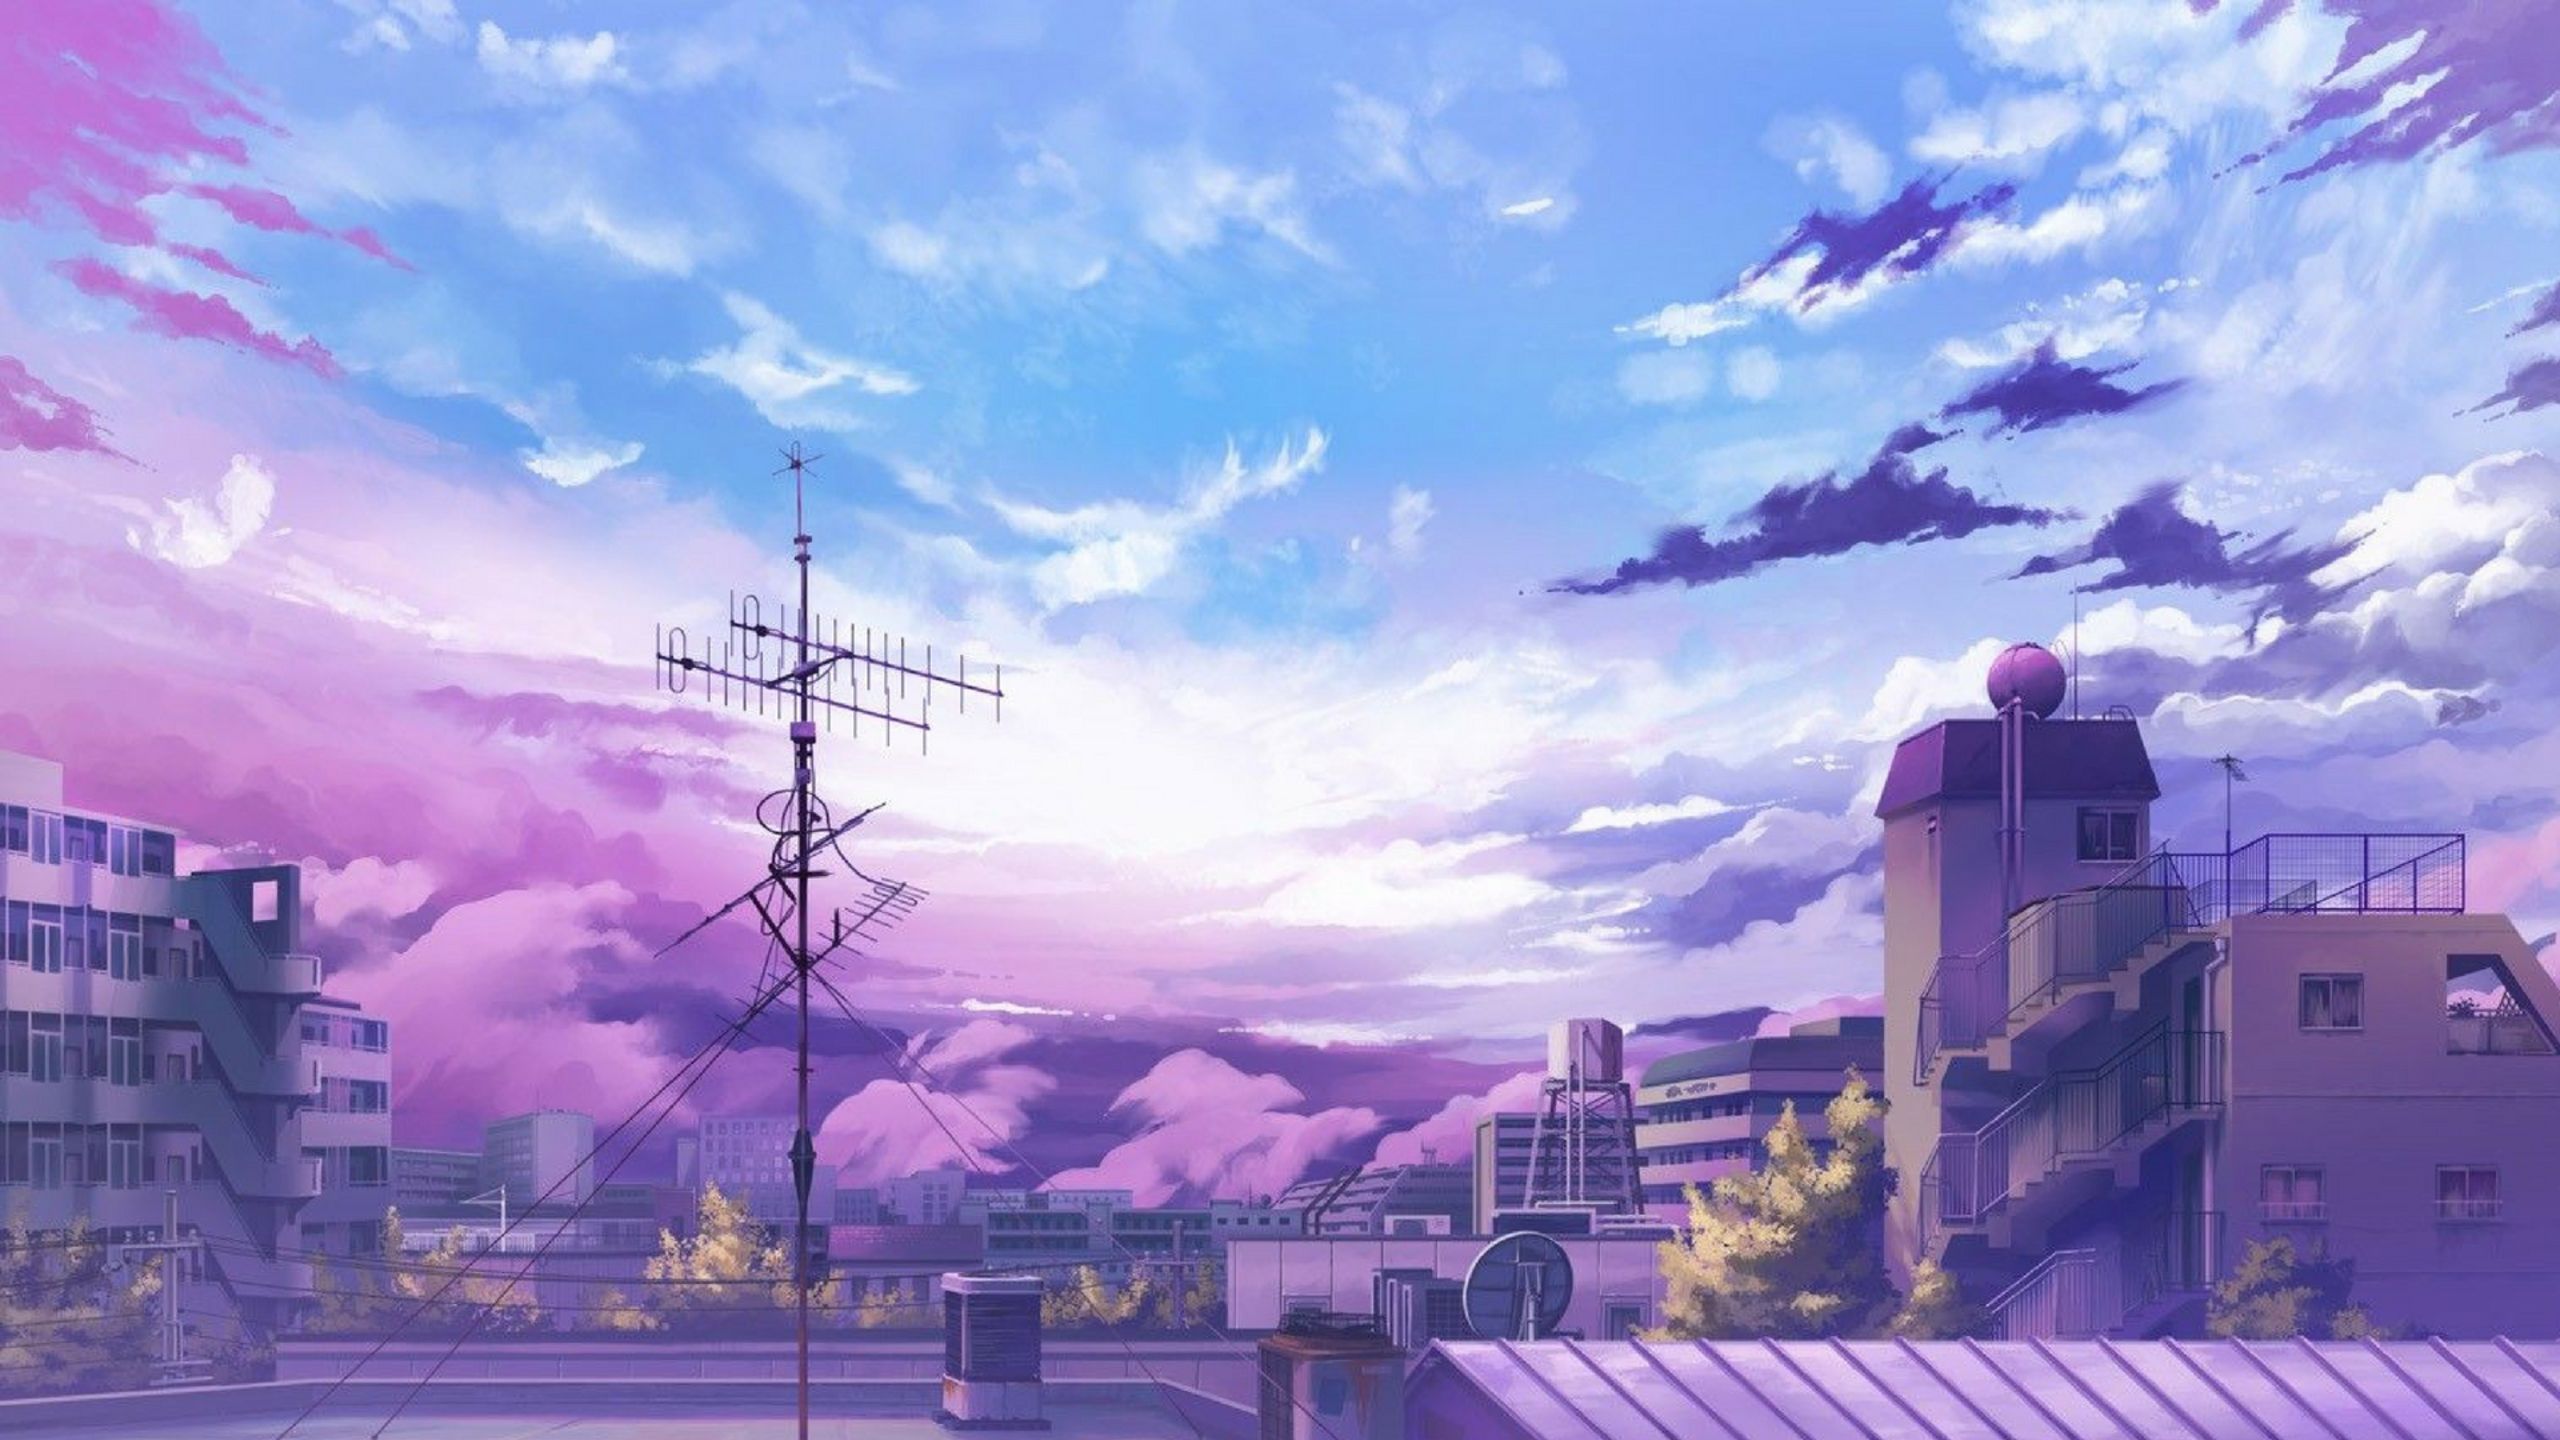 Anime City Wallpapers: Nếu bạn yêu thích phong cách hoạt hình anime và đô thị đầy sôi động, các hình nền anime của thành phố chắc chắn sẽ không làm bạn thất vọng. Những hình ảnh độc đáo và sáng tạo này sẽ chắc chắn làm bạn say mê và tái tạo lại tinh thần vào môi trường làm việc và học tập!